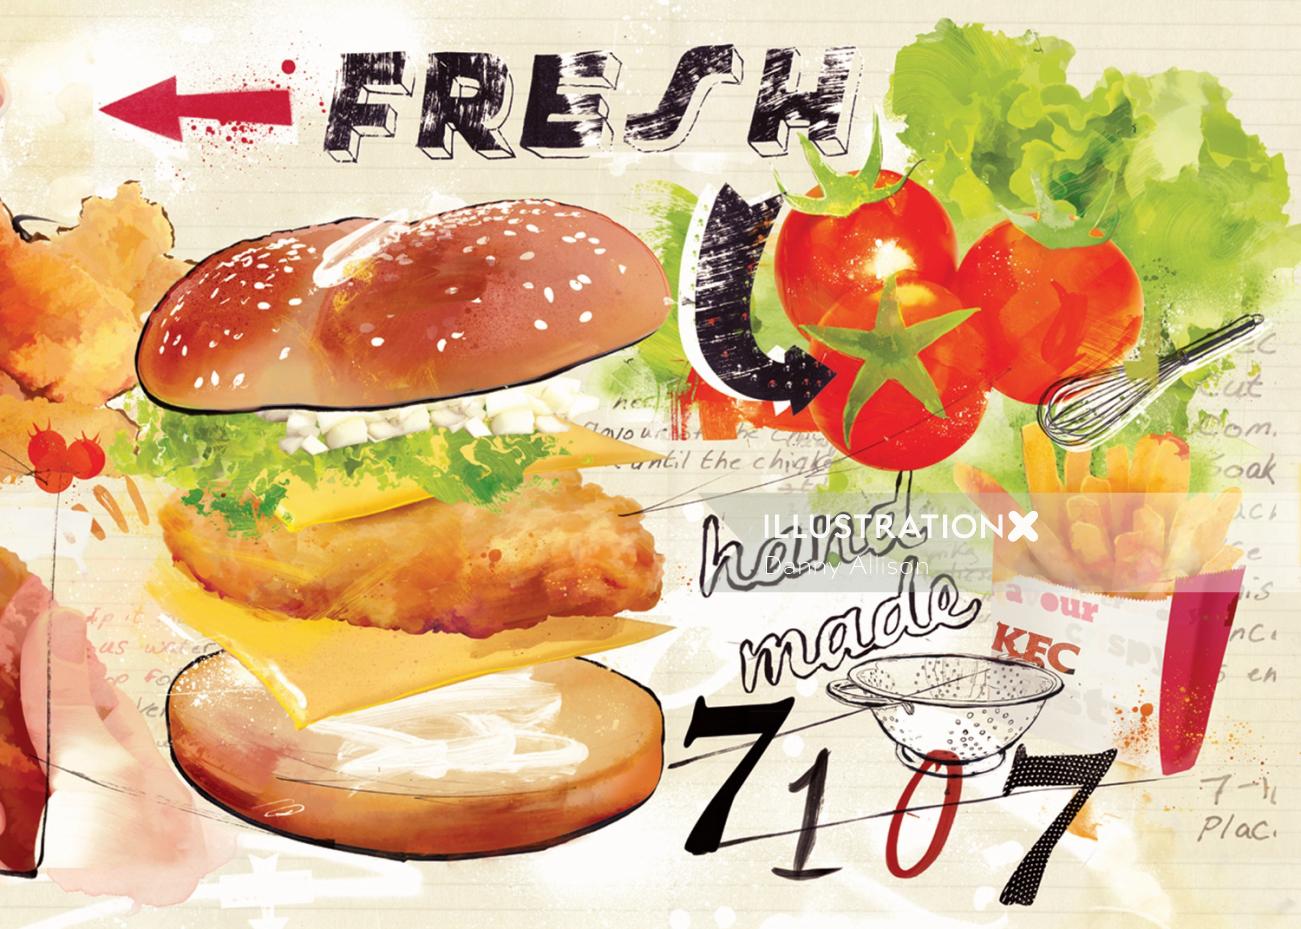 kfc, chicken, food, advertising, fast food, junk food, fries, bruger,